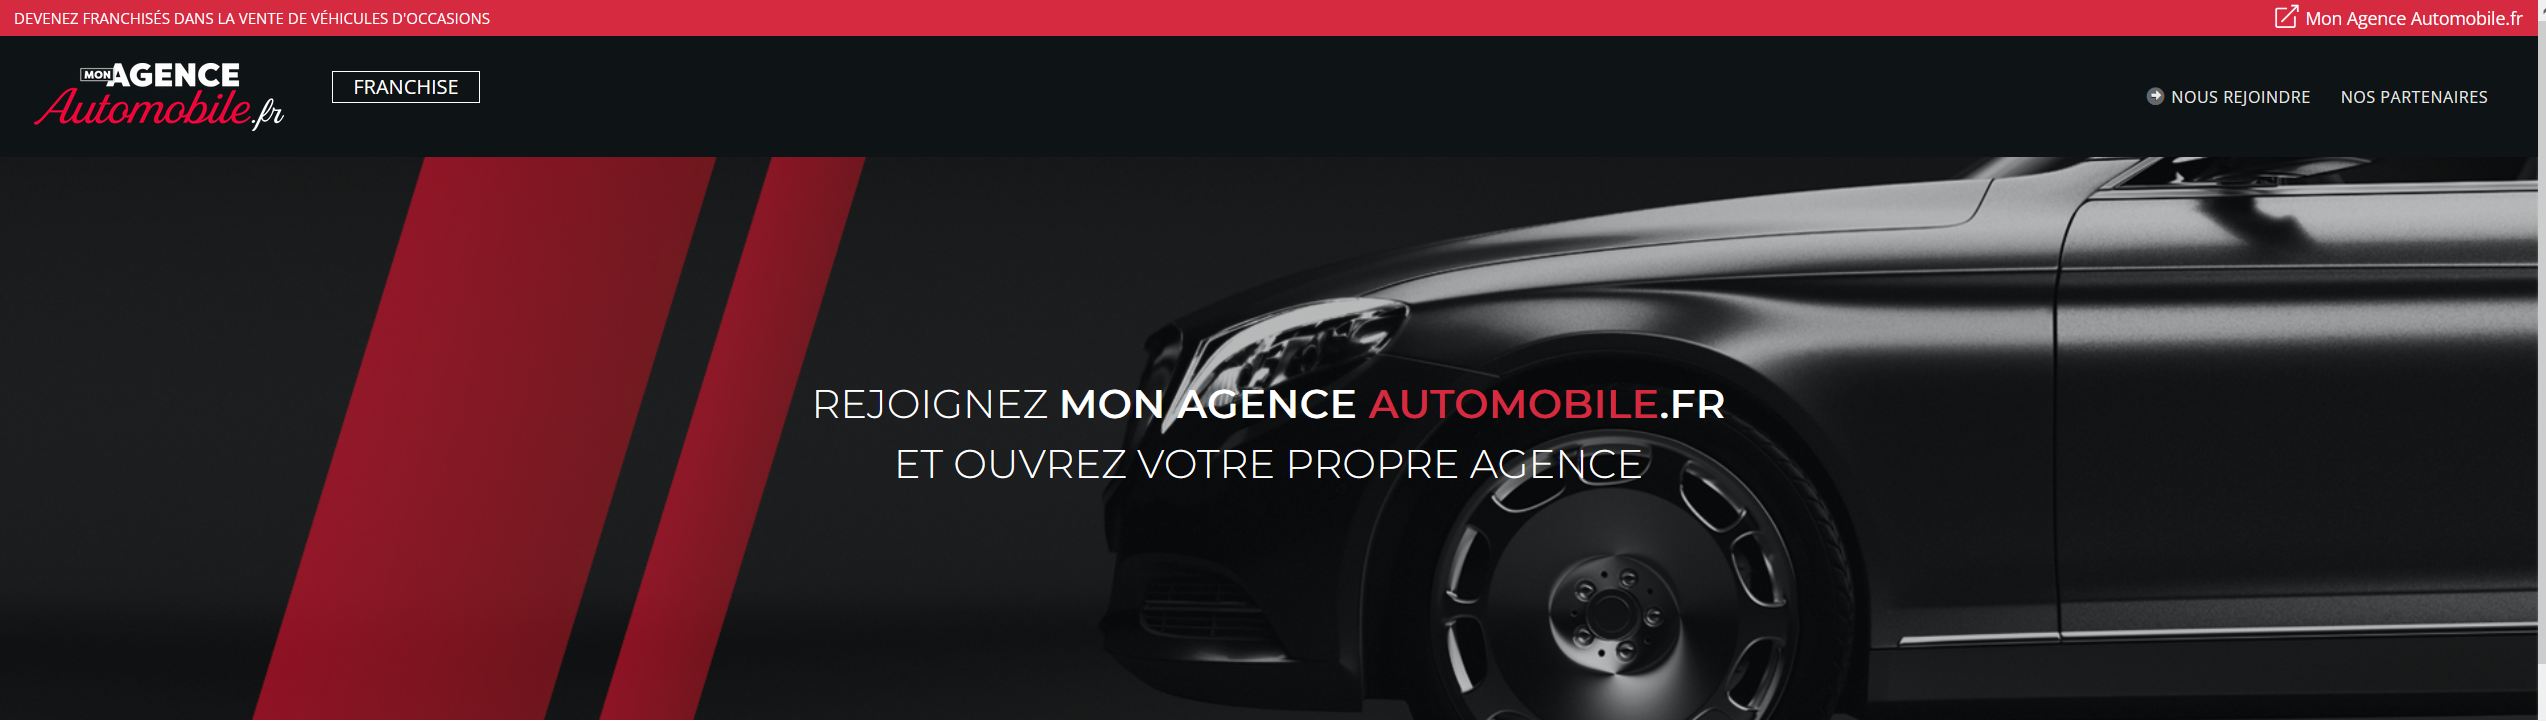 Le site des franchisés Mon Agence automobile;fr